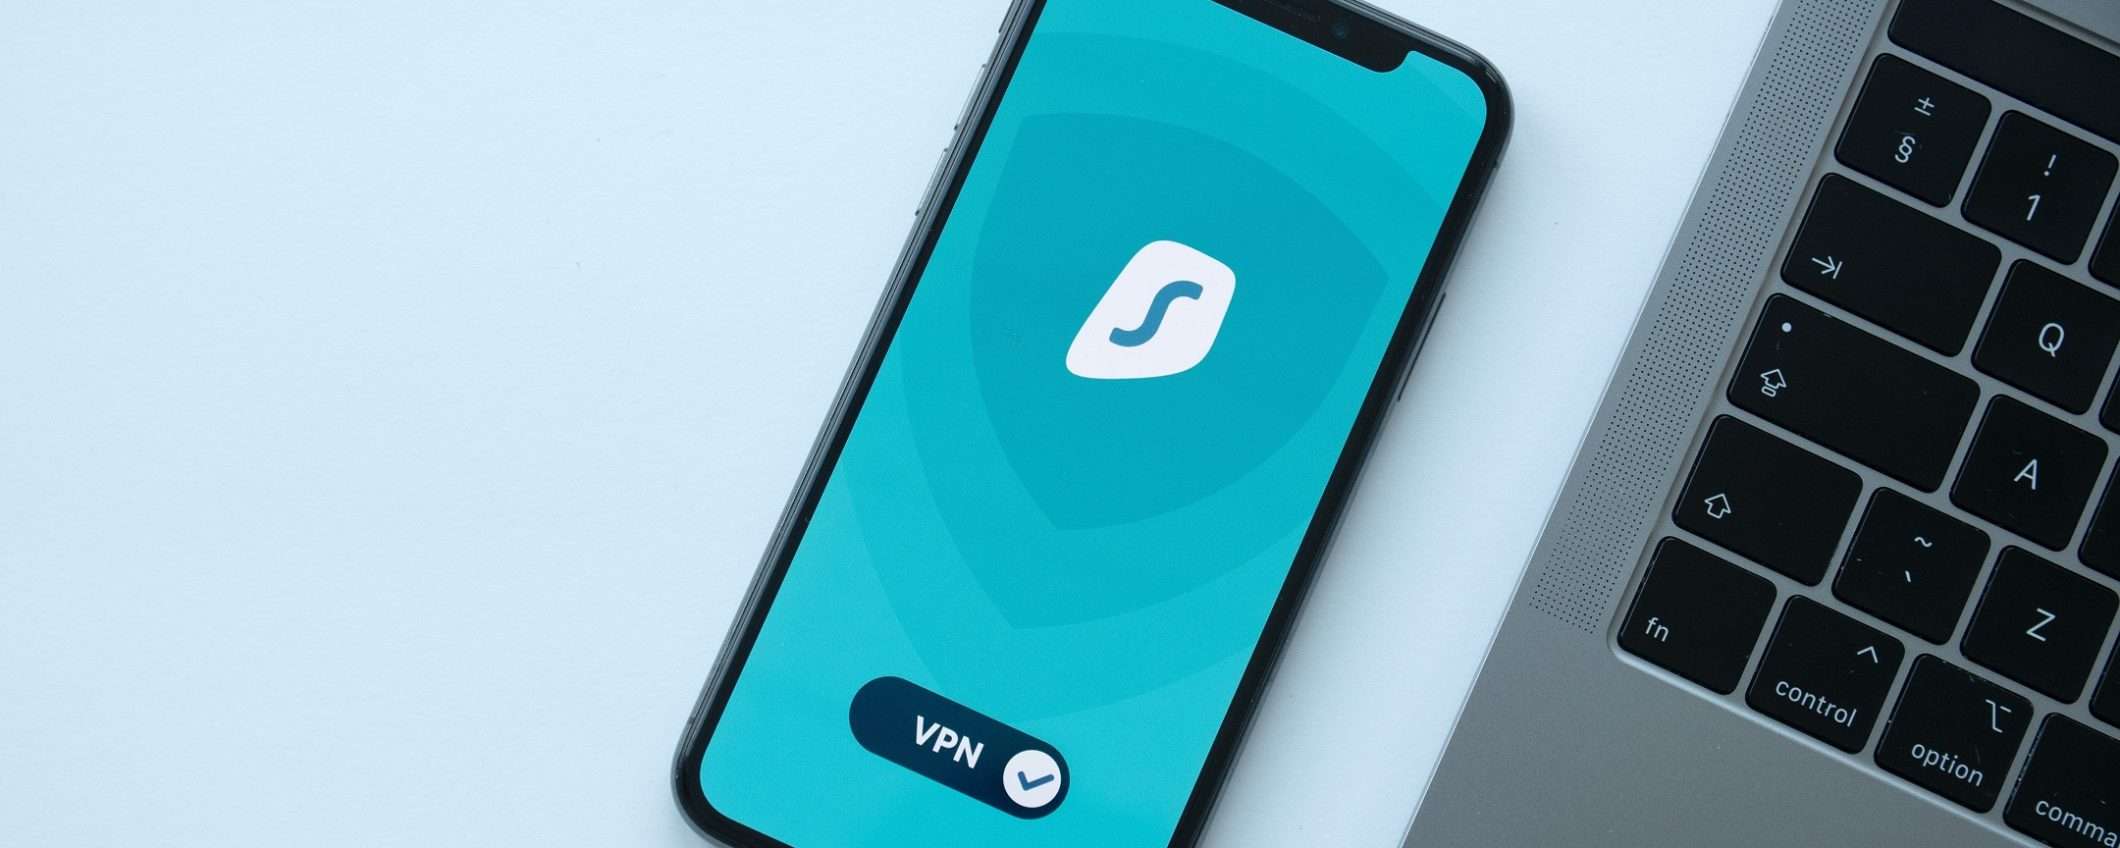 VPN su iPhone: la migliore costa solo 2,05 euro al mese